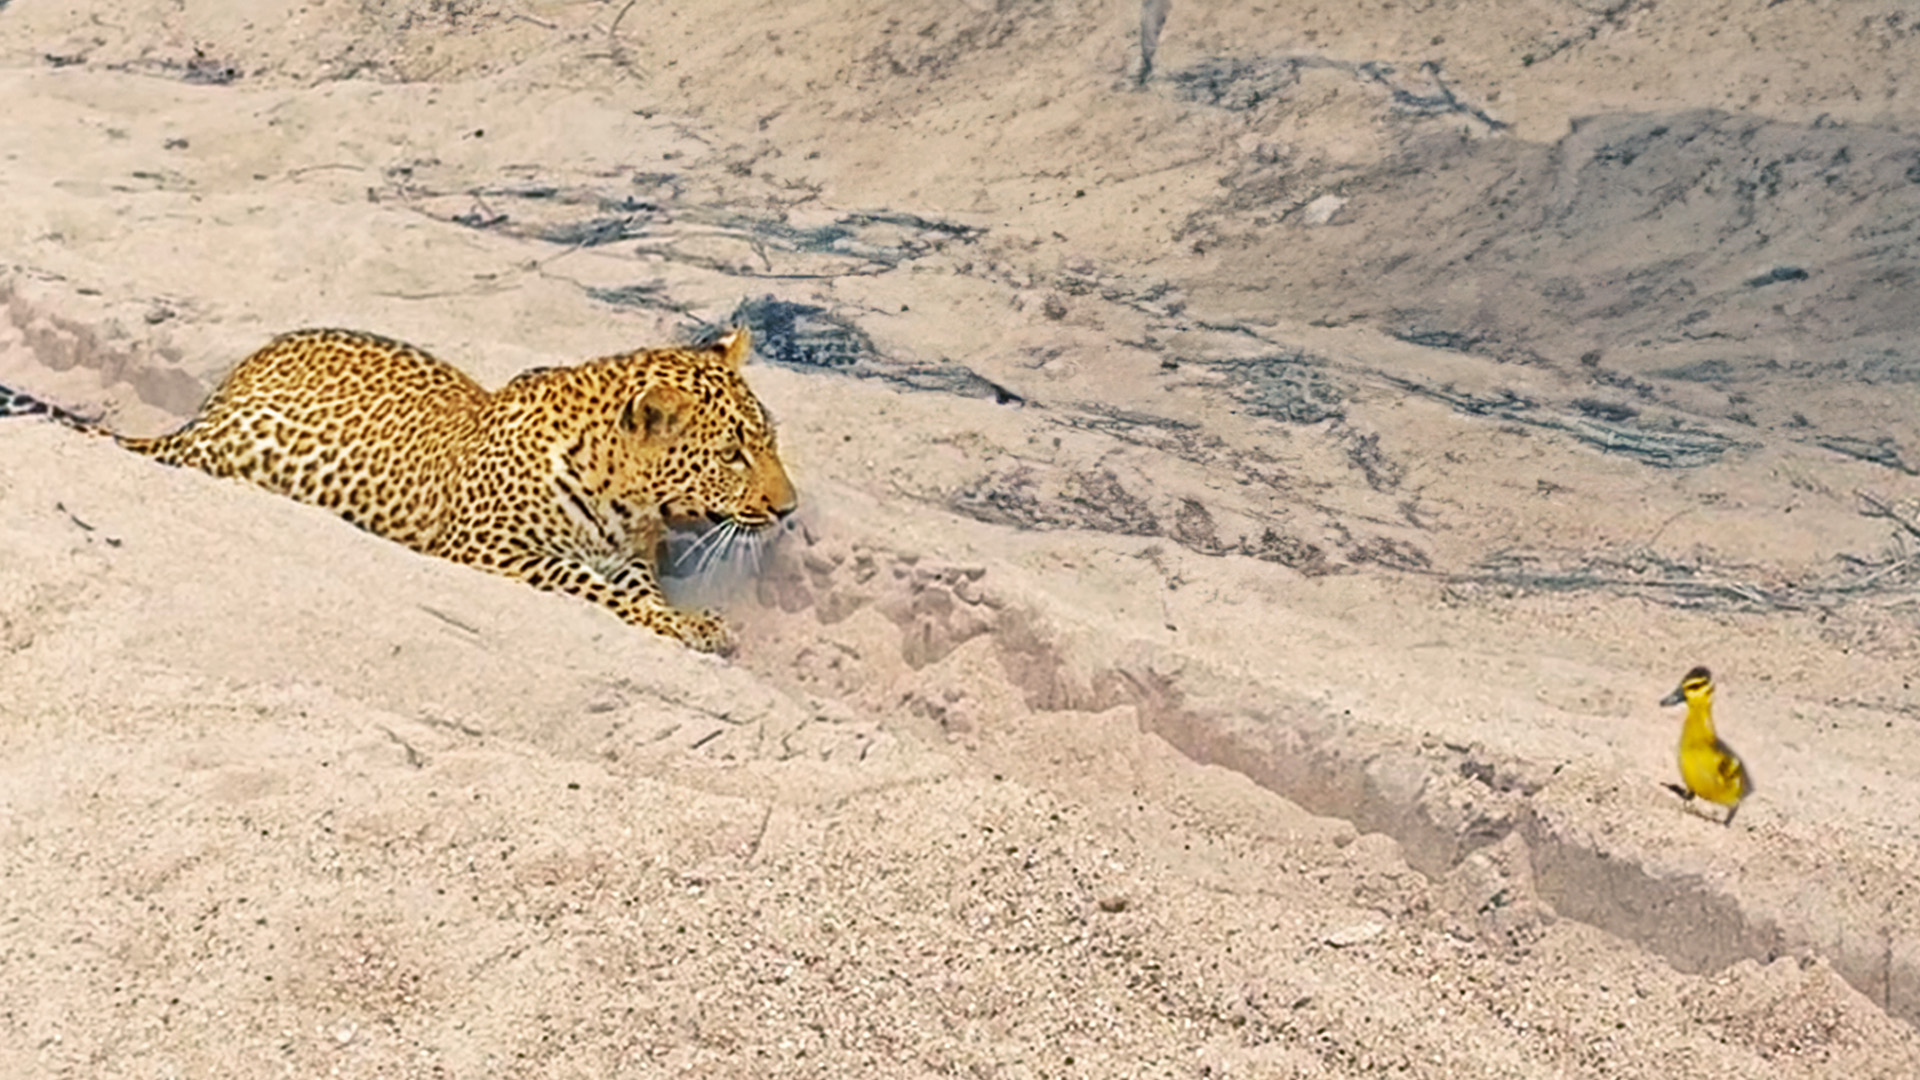 Innocent Baby Bird Walks up to Leopard – Crazy Ending